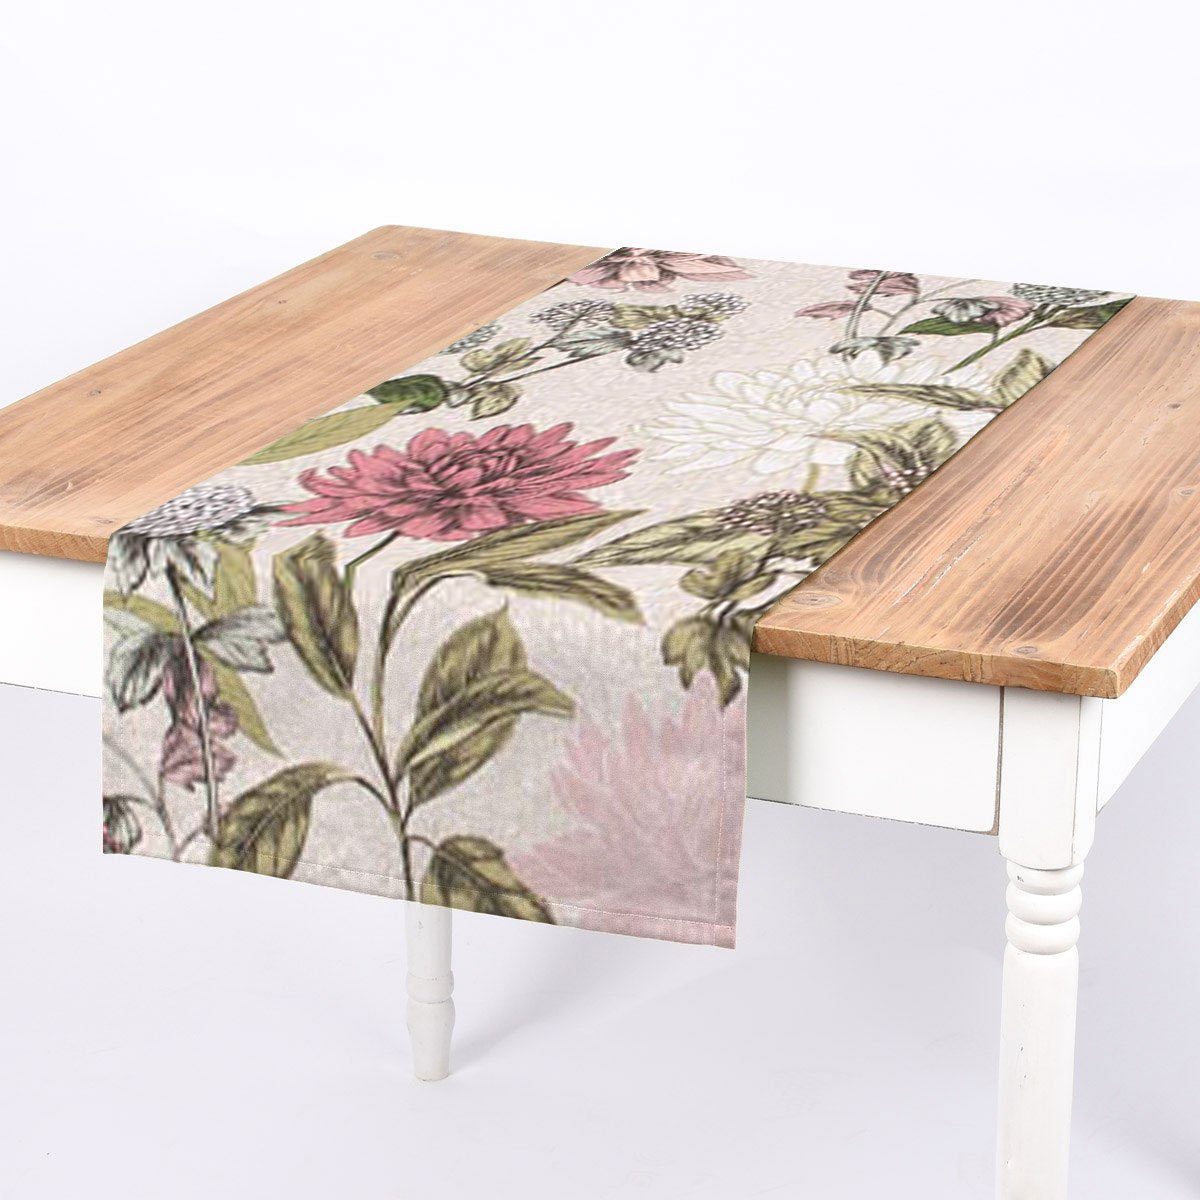 SCHÖNER LEBEN. Tischläufer SCHÖNER LEBEN. Tischläufer Clothilde Pastell Blumentraum beige lila, handmade | Tischläufer